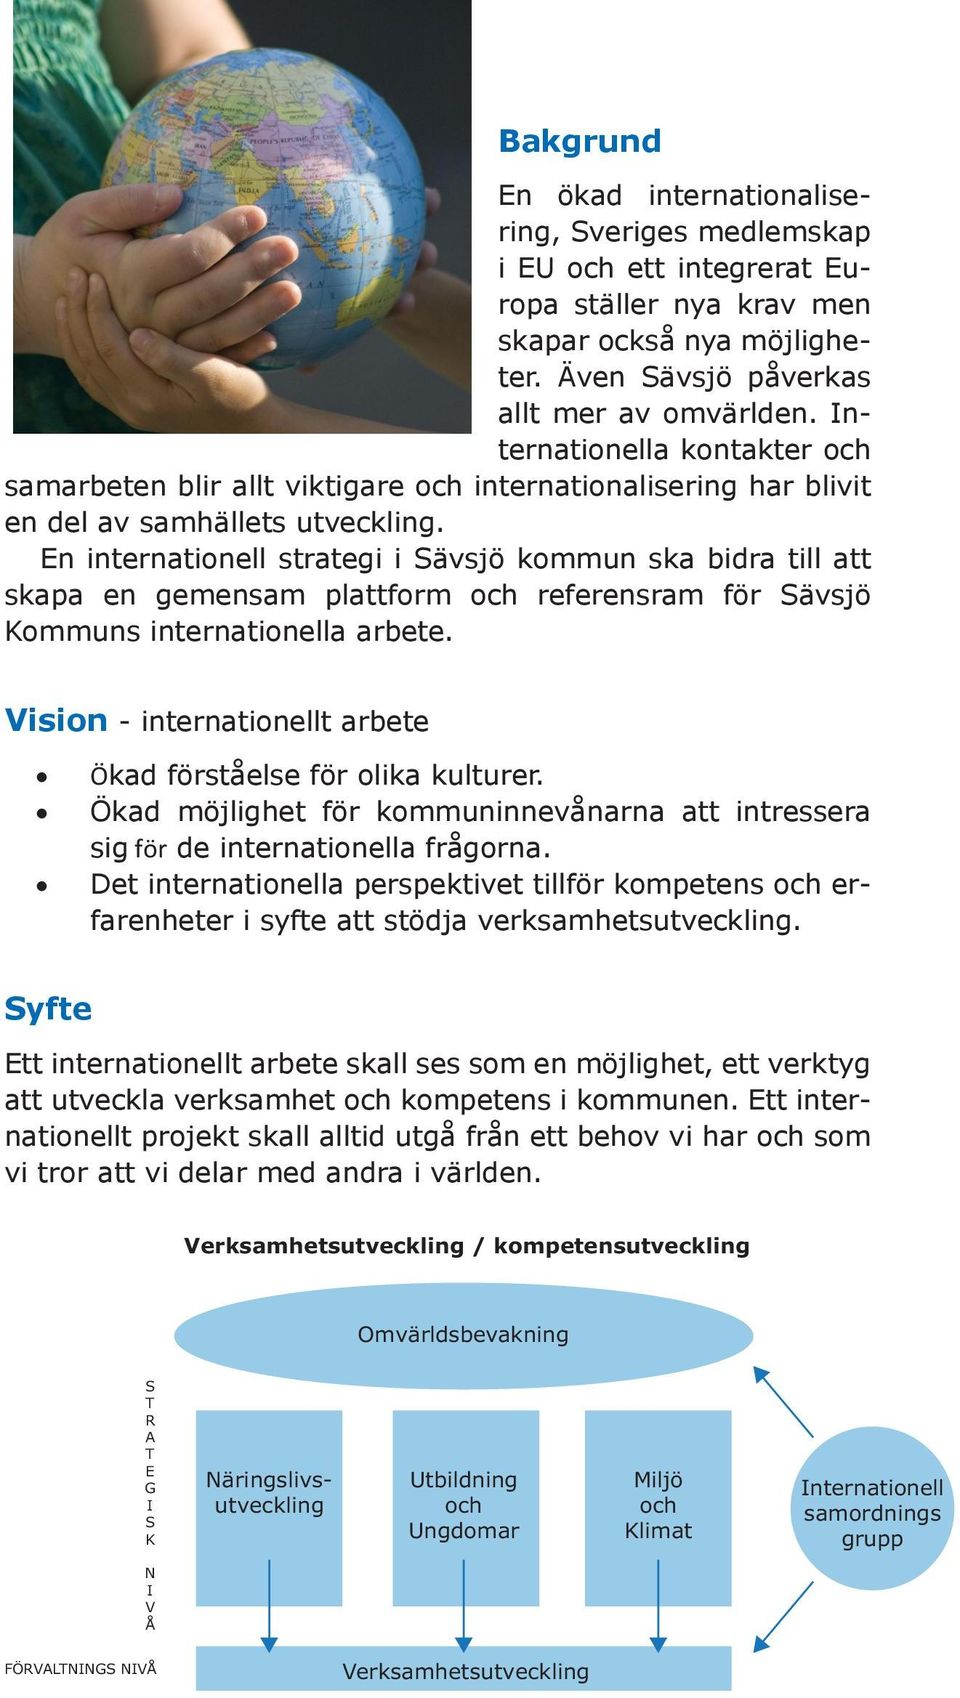 En internationell strategi i Sävsjö kommun ska bidra till att skapa en gemensam plattform och referensram för Sävsjö Kommuns internationella arbete.